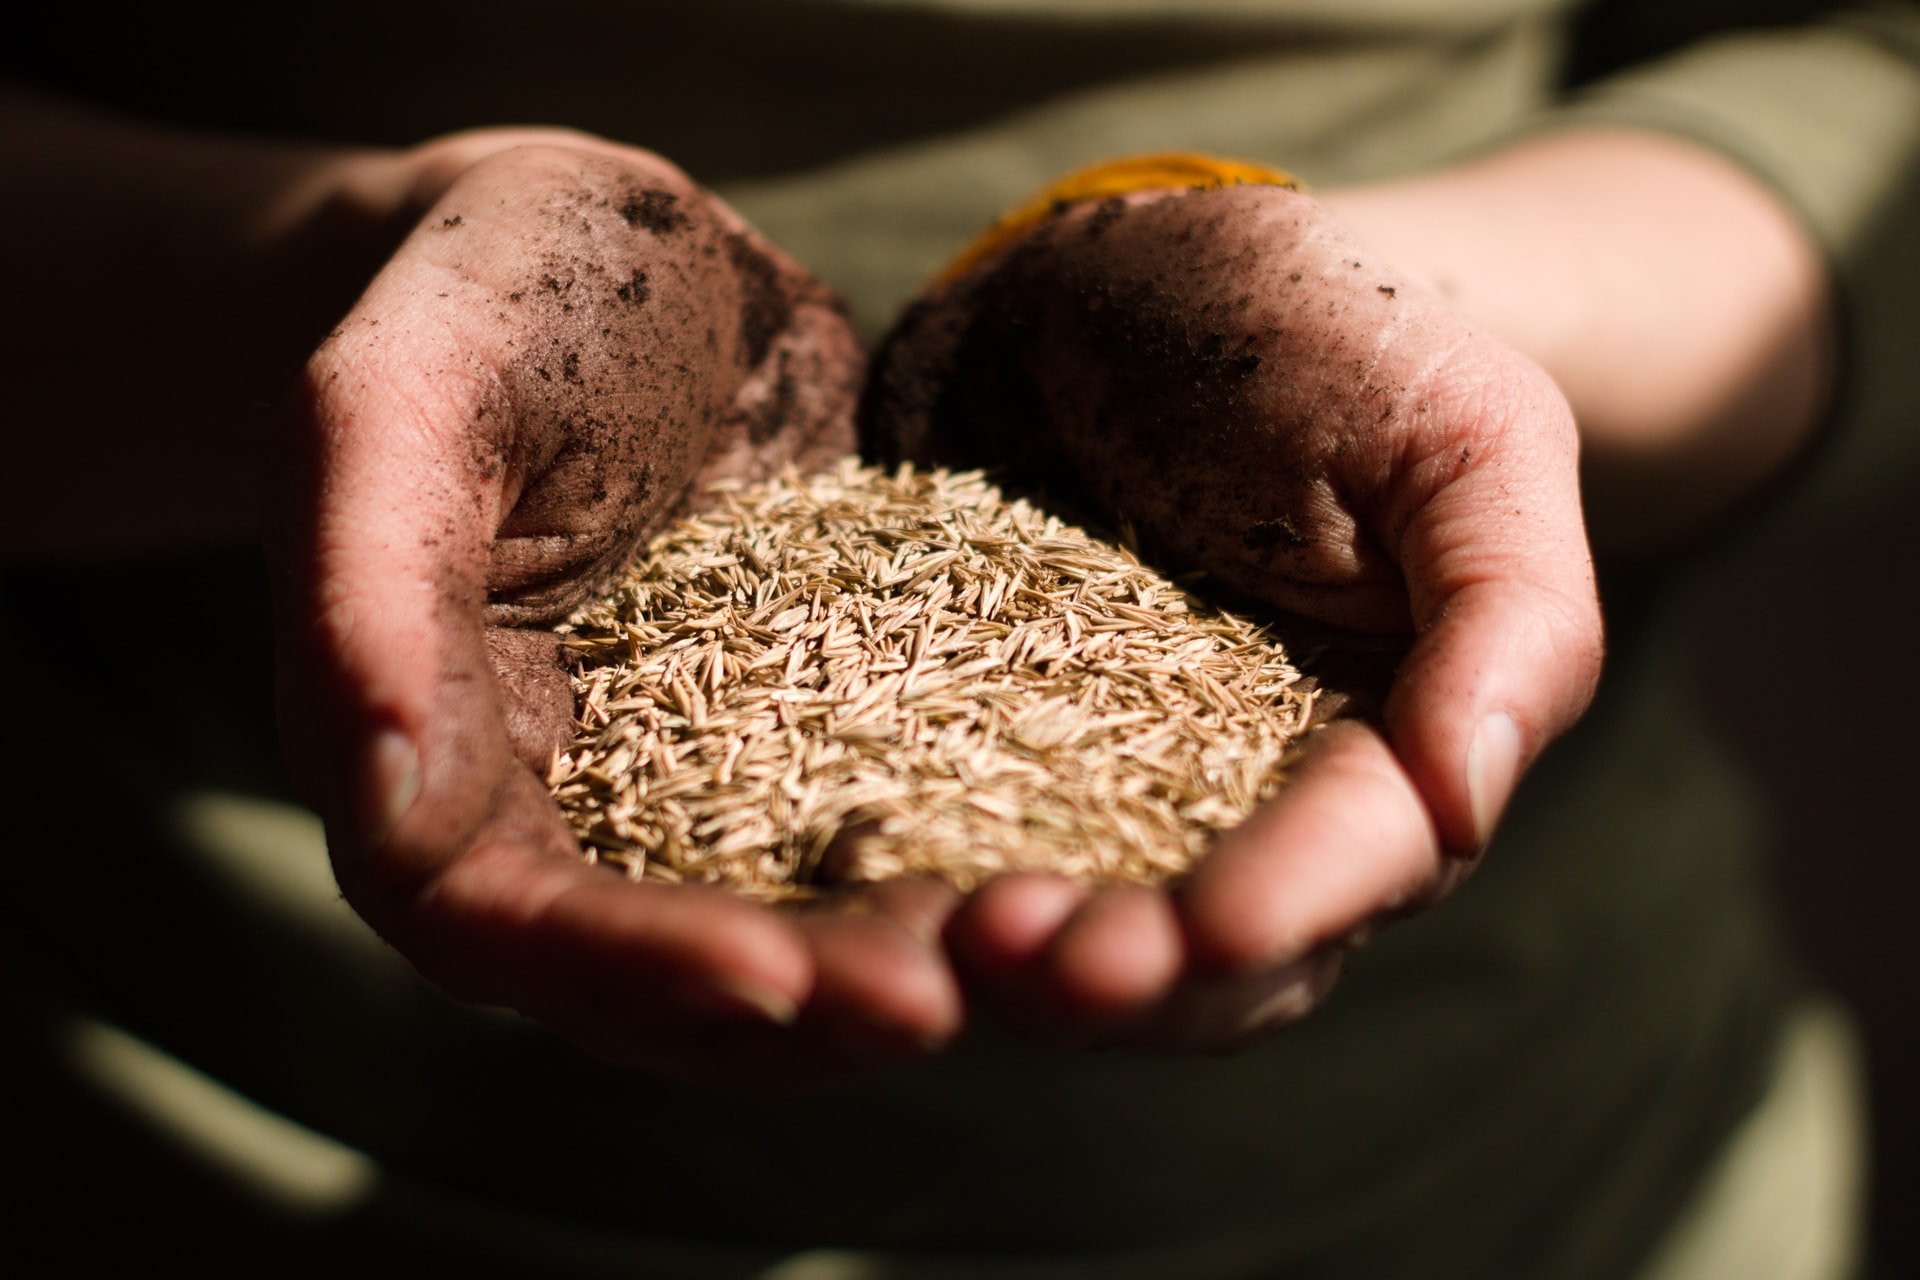 

Меньше потребности: в Удмуртии за посевный сезон планируют собрать не более 450 тысяч тонн зерна

